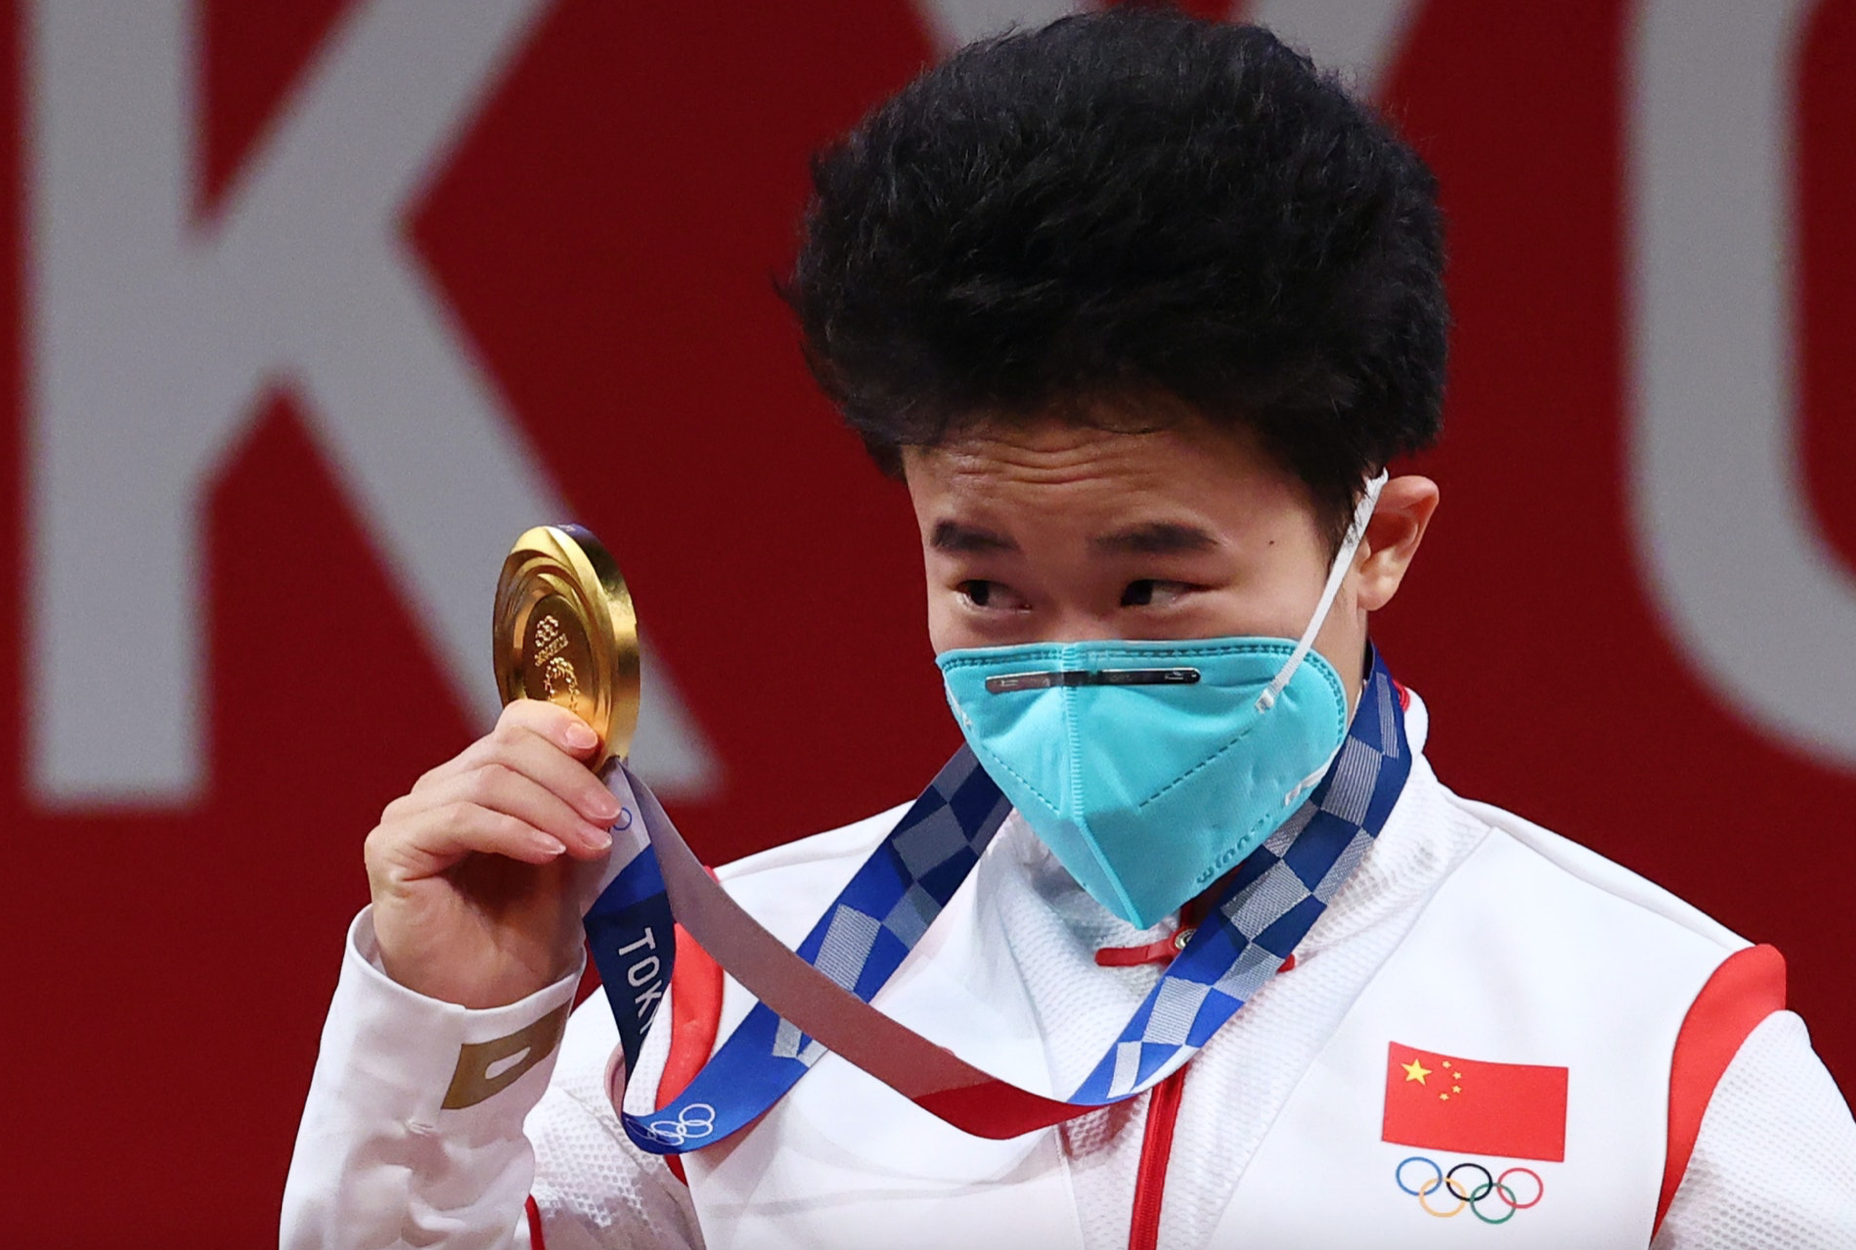 女子重量挙げで金メダルを獲得した中国人選手に男性疑惑　多様性で済ませるつもりか?